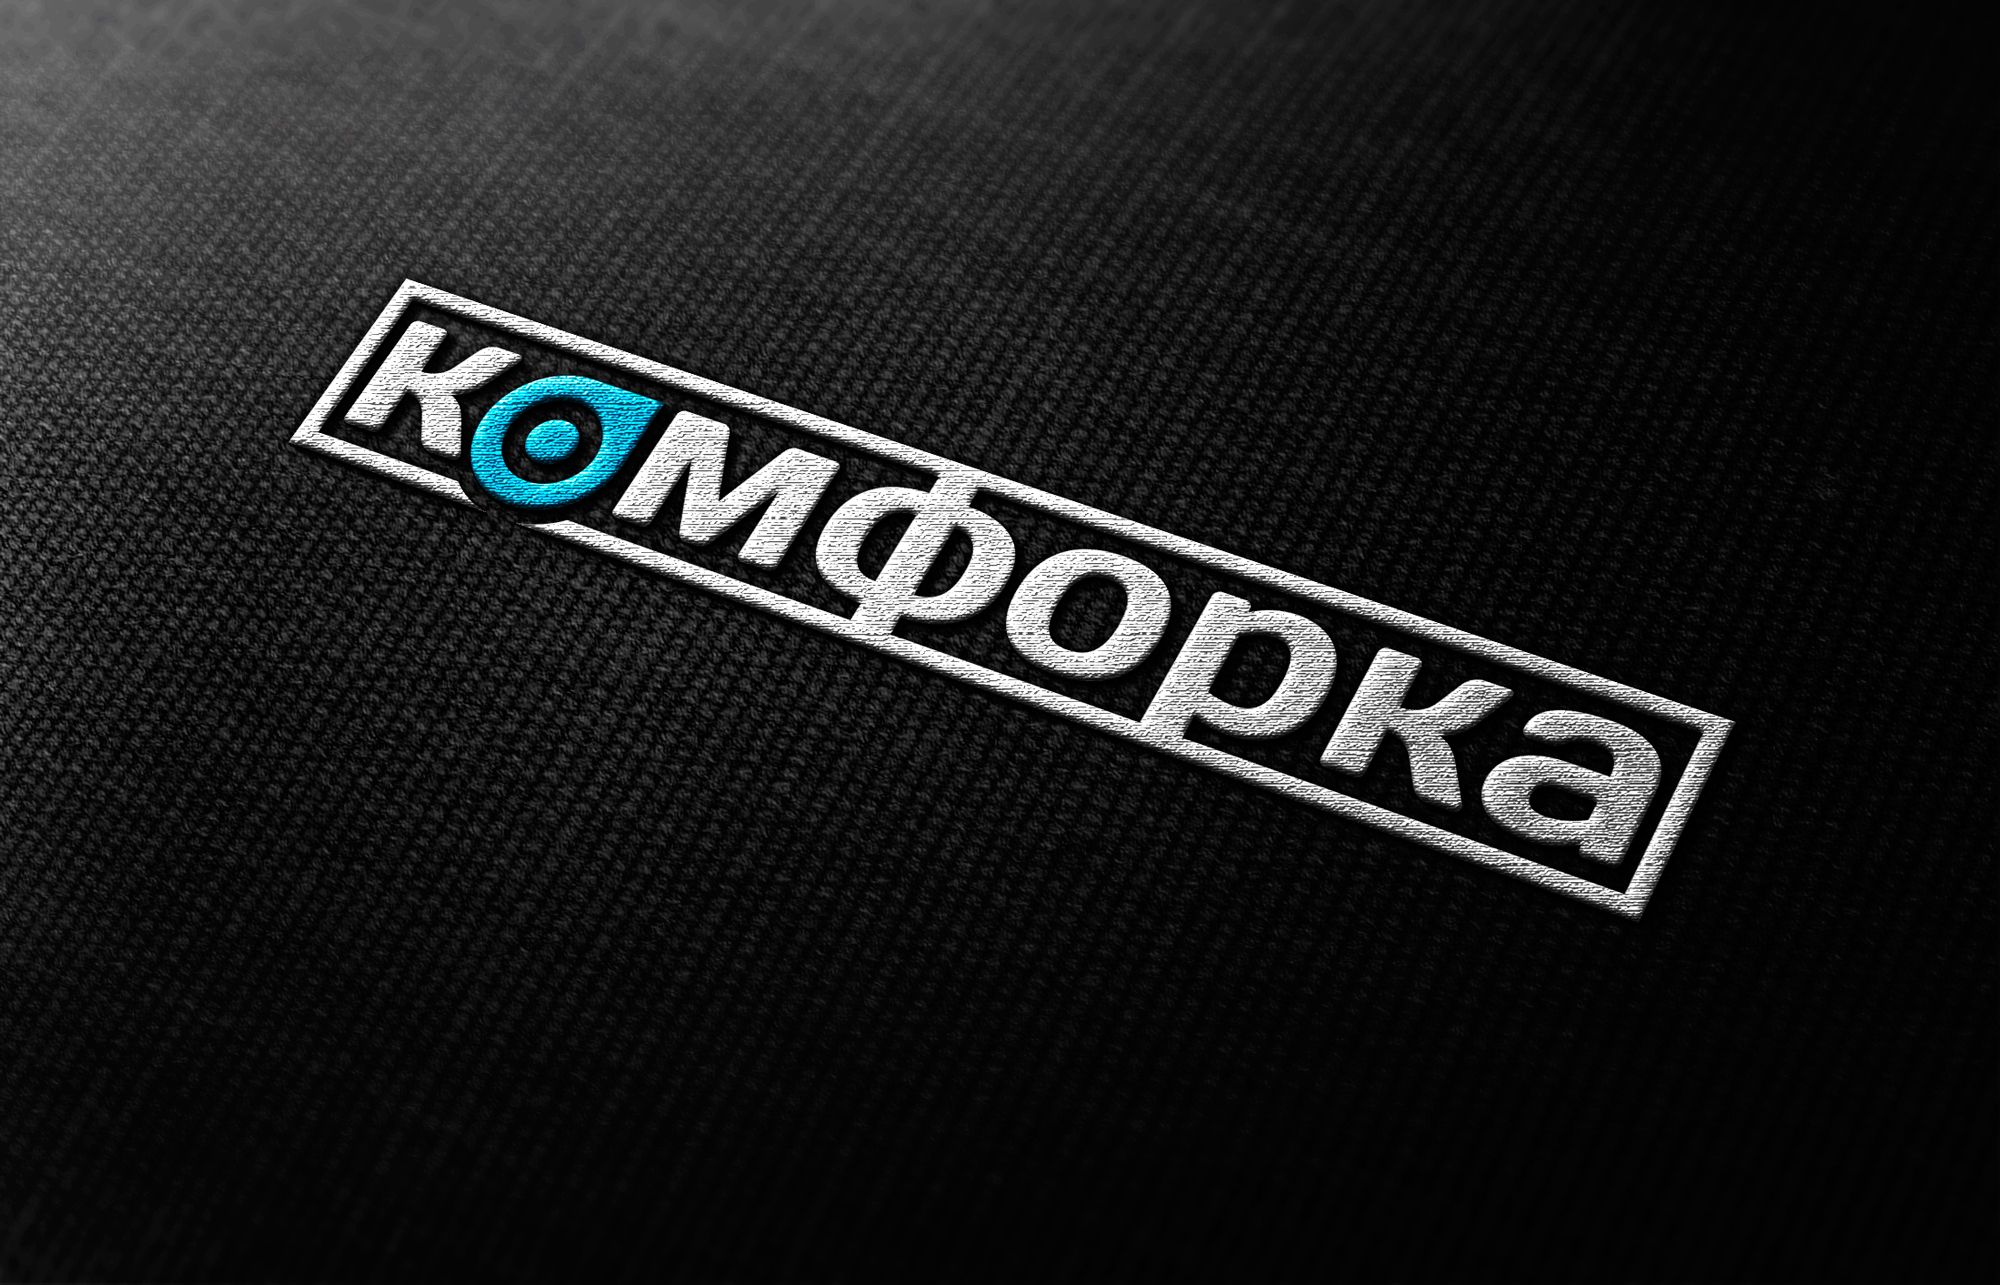 Логотип для интернет проекта com4ka.com - дизайнер Ninpo